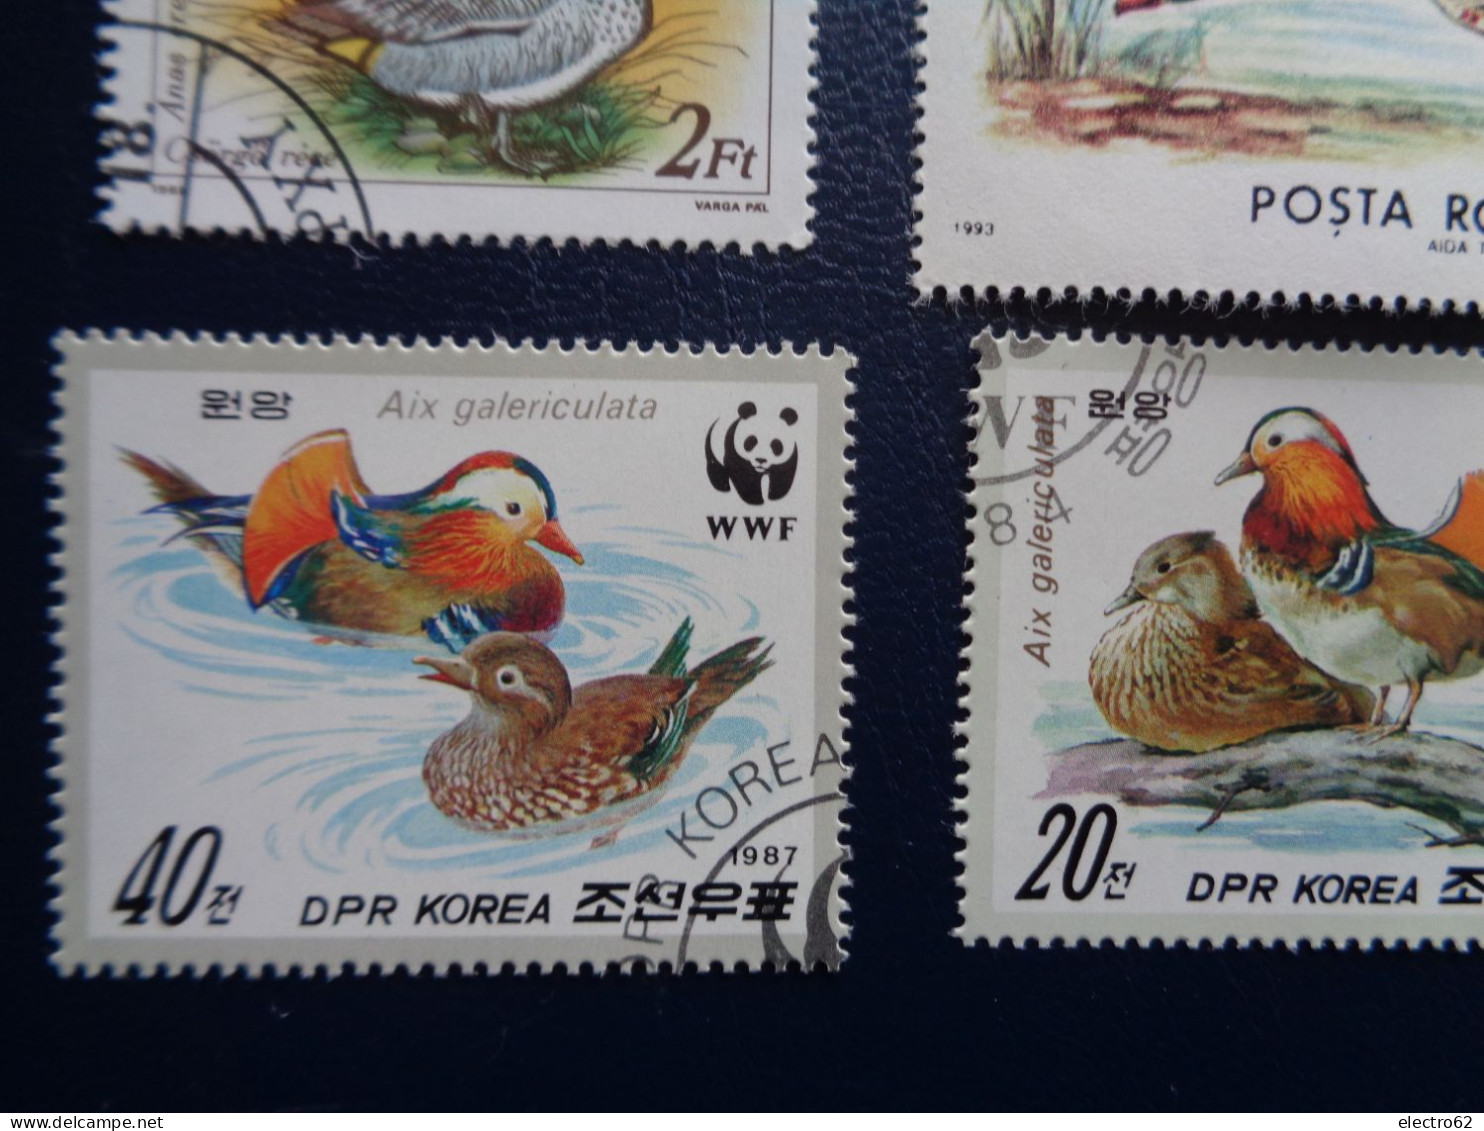 Roumanie  Cambodge canard duck ente pato anatra eend giappone and Hongrie Corée Romana Magyar posta Korea